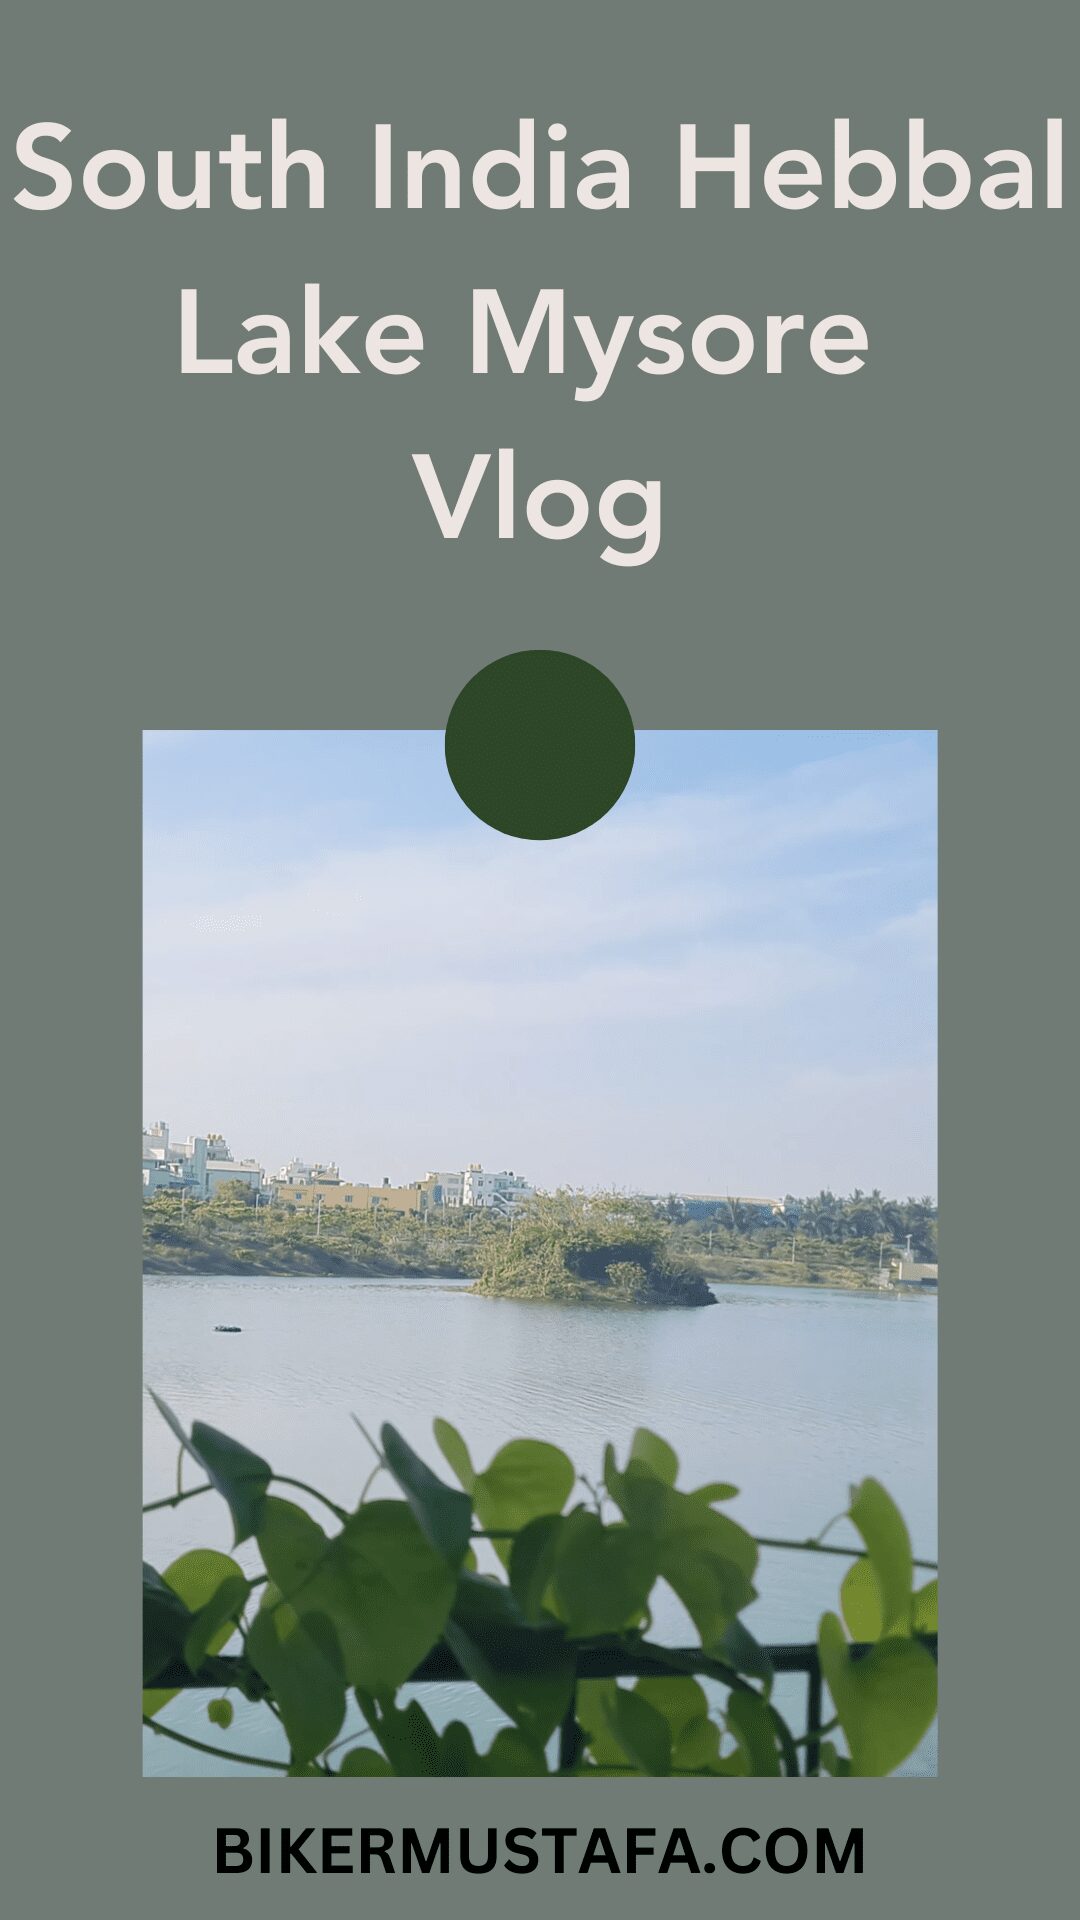 South India Hebbal Lake Mysore Vlog